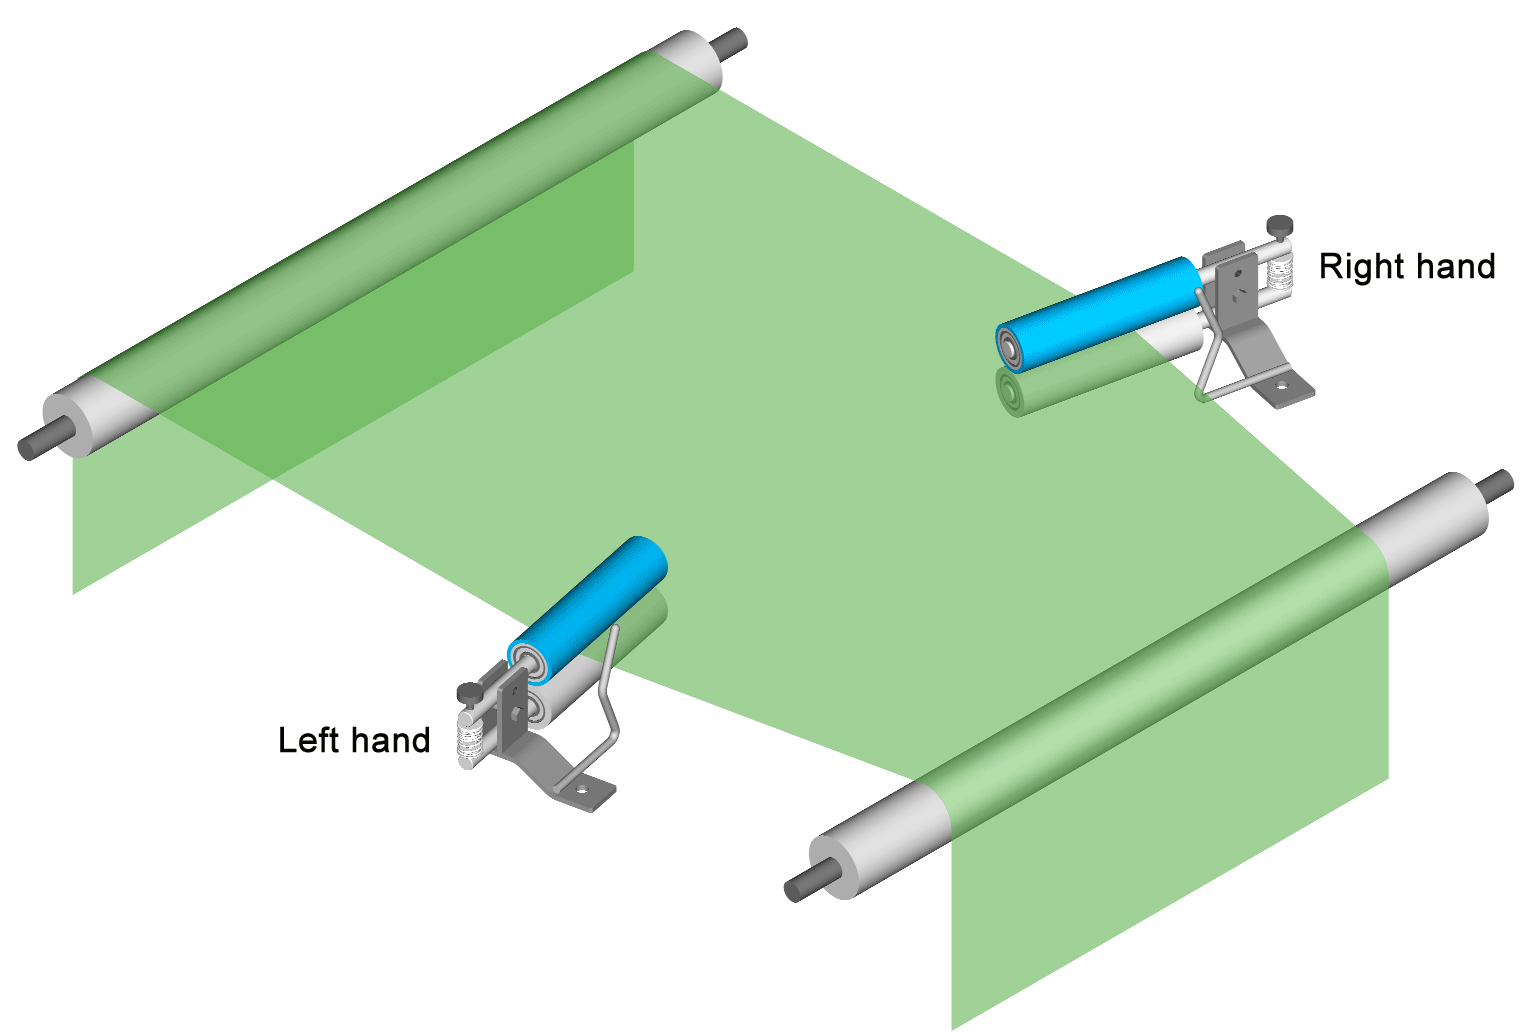 3D Adjusta-Pull Nip Type Spreader Rolls